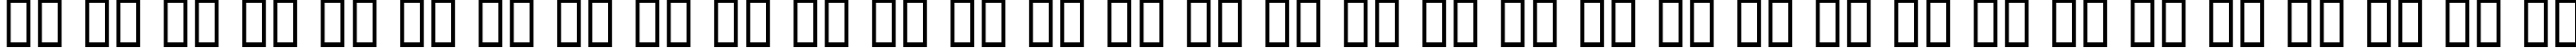 Пример написания русского алфавита шрифтом Turok Normal